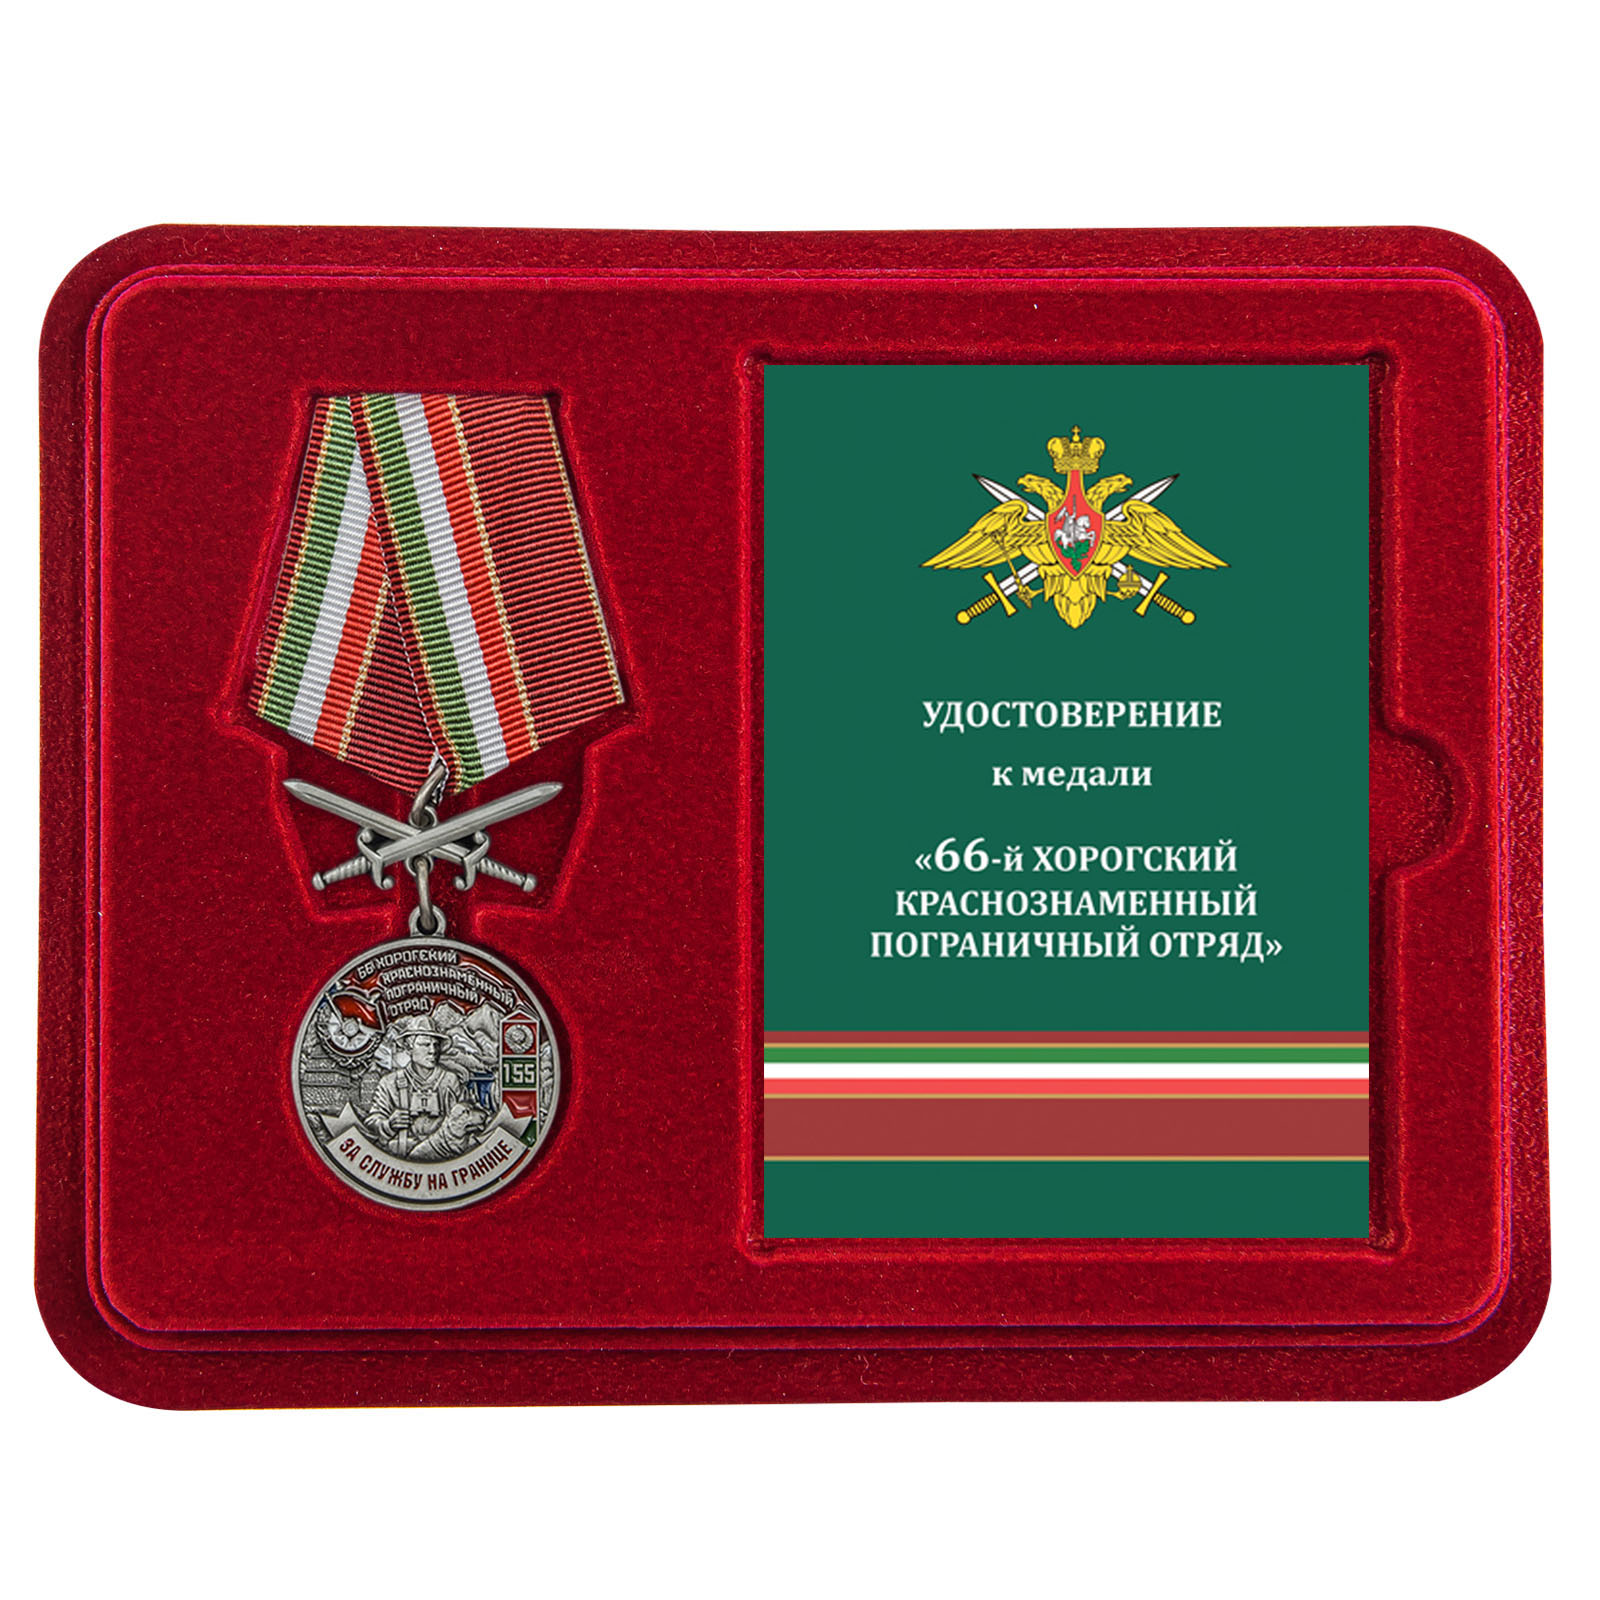 Купить медаль За службу в Хорогском пограничном отряде в подарок